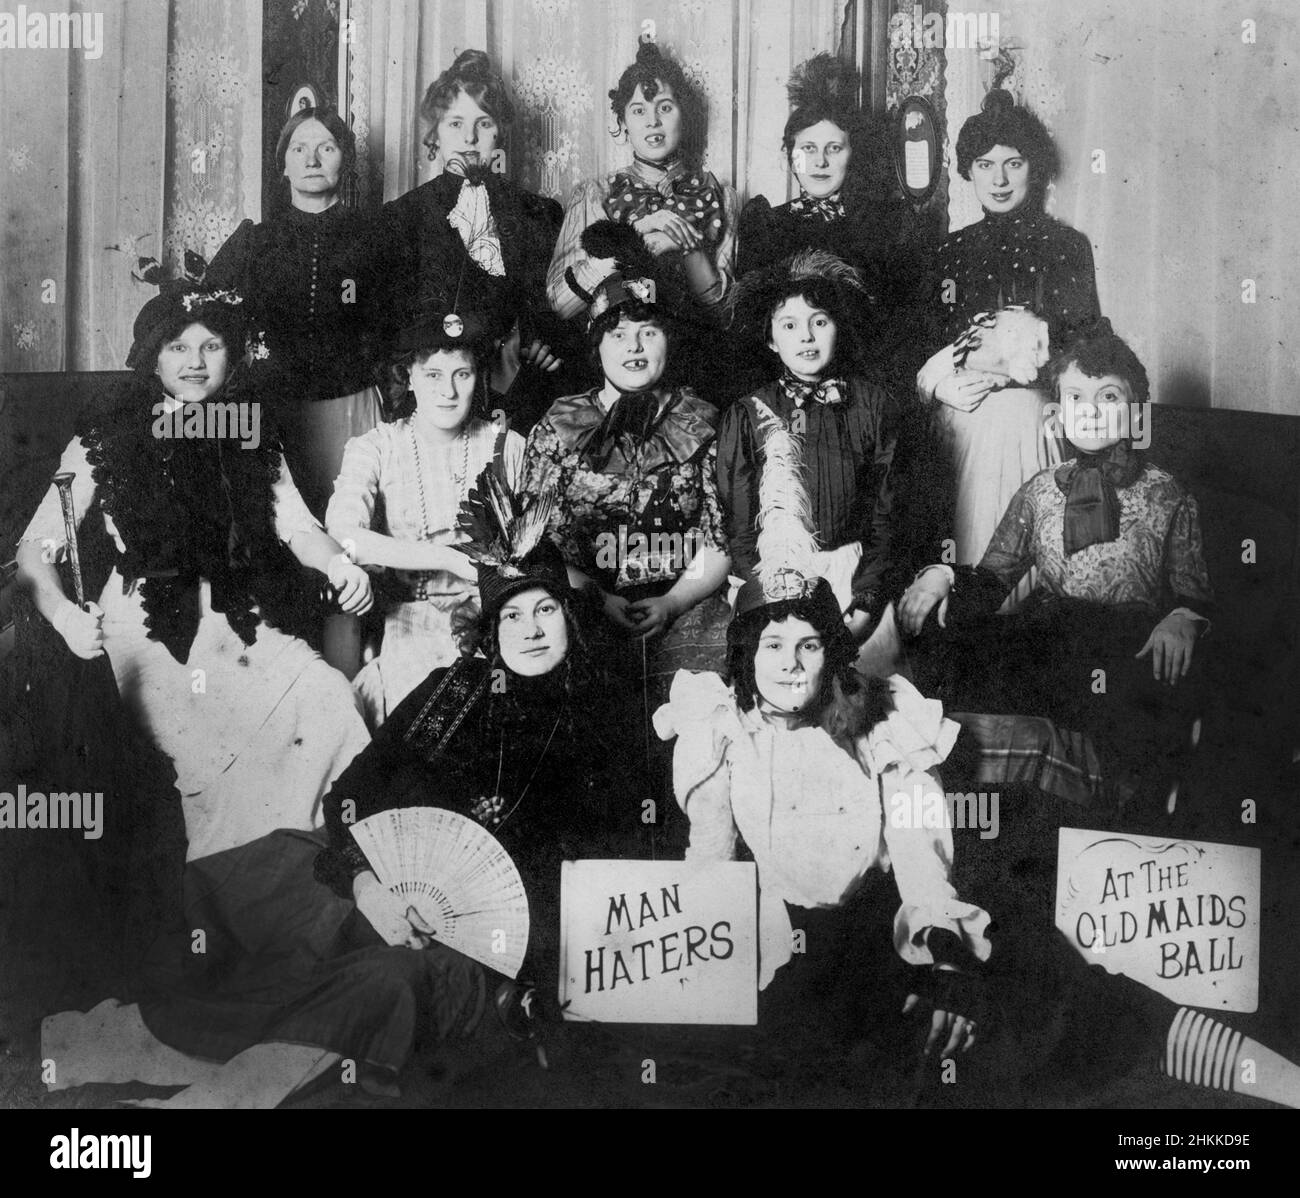 Un groupe de femmes costumés est 'Manters' au 'Old Maids ball,' ca. 1910. Banque D'Images